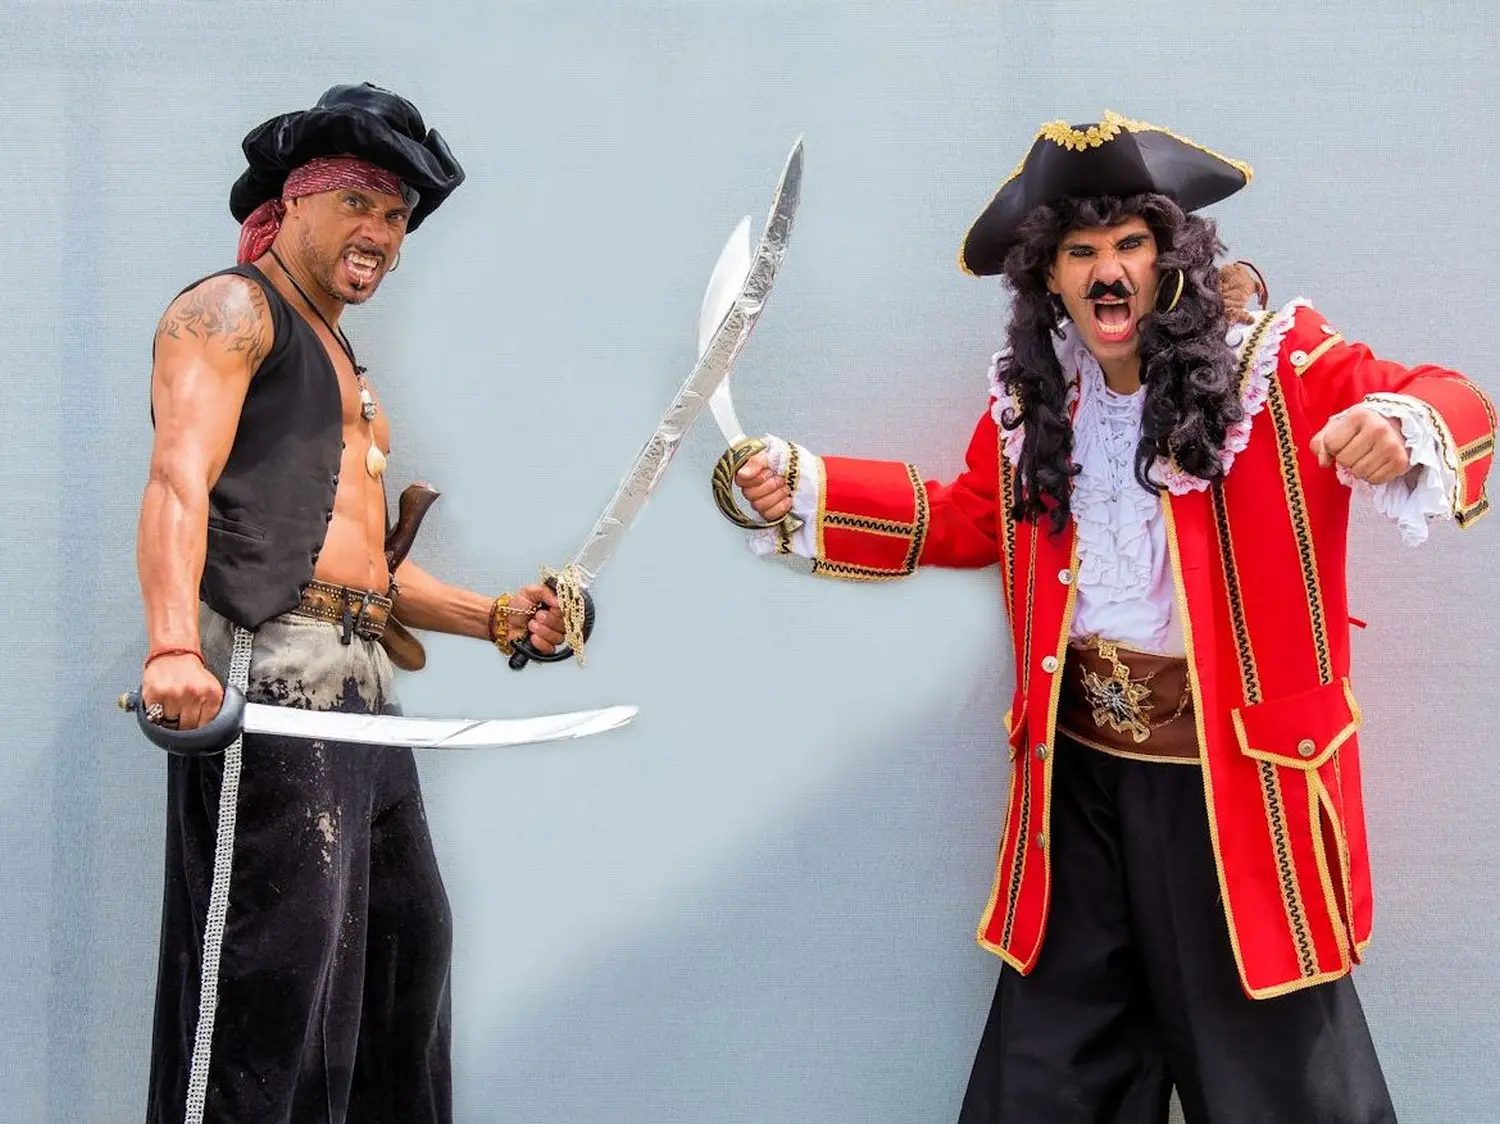 Skaramouche piraten